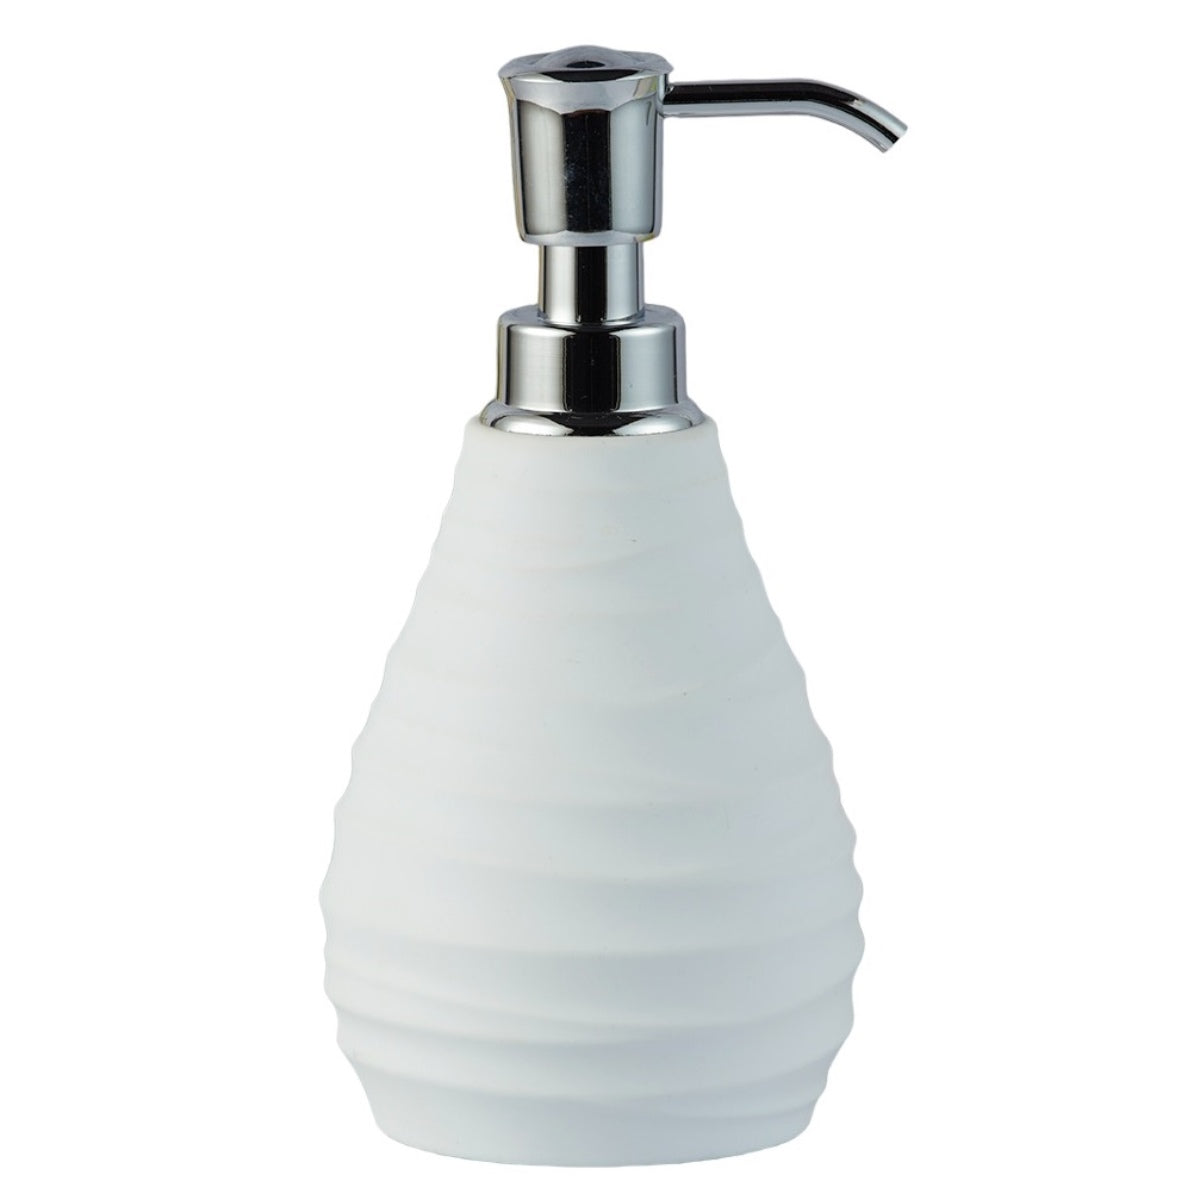 Acrylic Soap Dispenser Pump for Bathroom for Bath Gel, Lotion, Shampoo (9913)